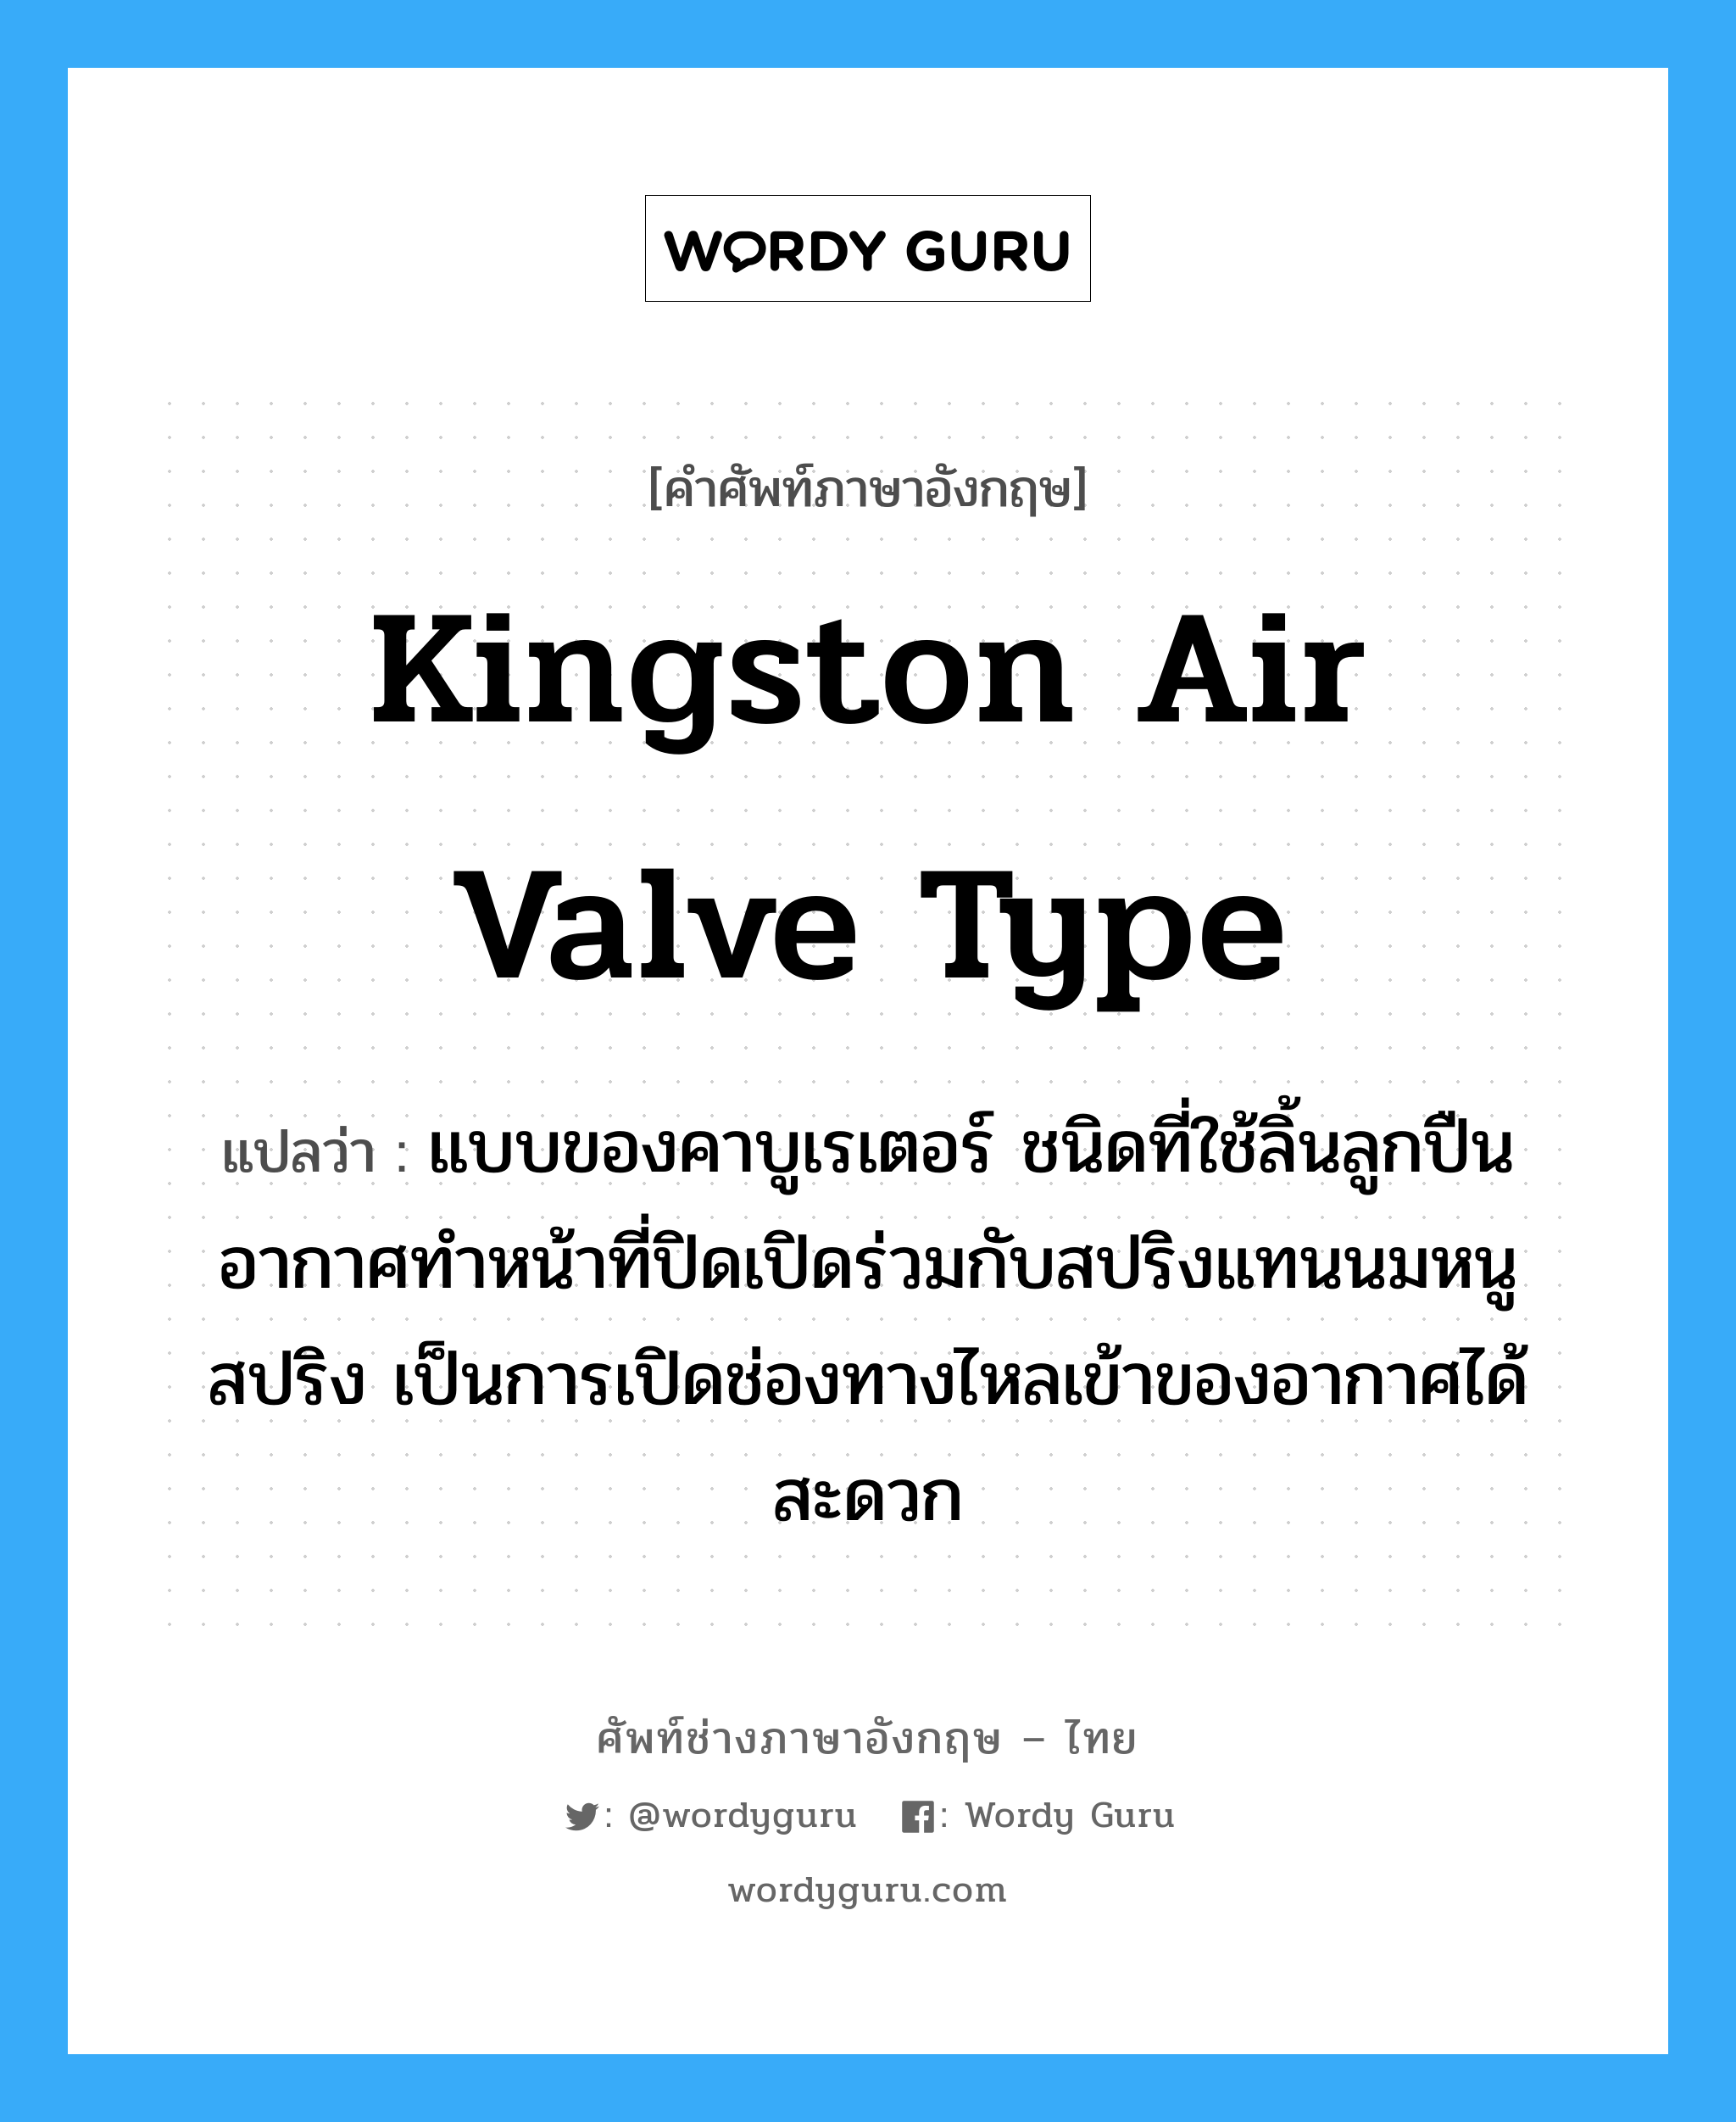 Kingston air valve type แปลว่า?, คำศัพท์ช่างภาษาอังกฤษ - ไทย Kingston air valve type คำศัพท์ภาษาอังกฤษ Kingston air valve type แปลว่า แบบของคาบูเรเตอร์ ชนิดที่ใช้ลิ้นลูกปืนอากาศทำหน้าที่ปิดเปิดร่วมกับสปริงแทนนมหนูสปริง เป็นการเปิดช่องทางไหลเข้าของอากาศได้สะดวก